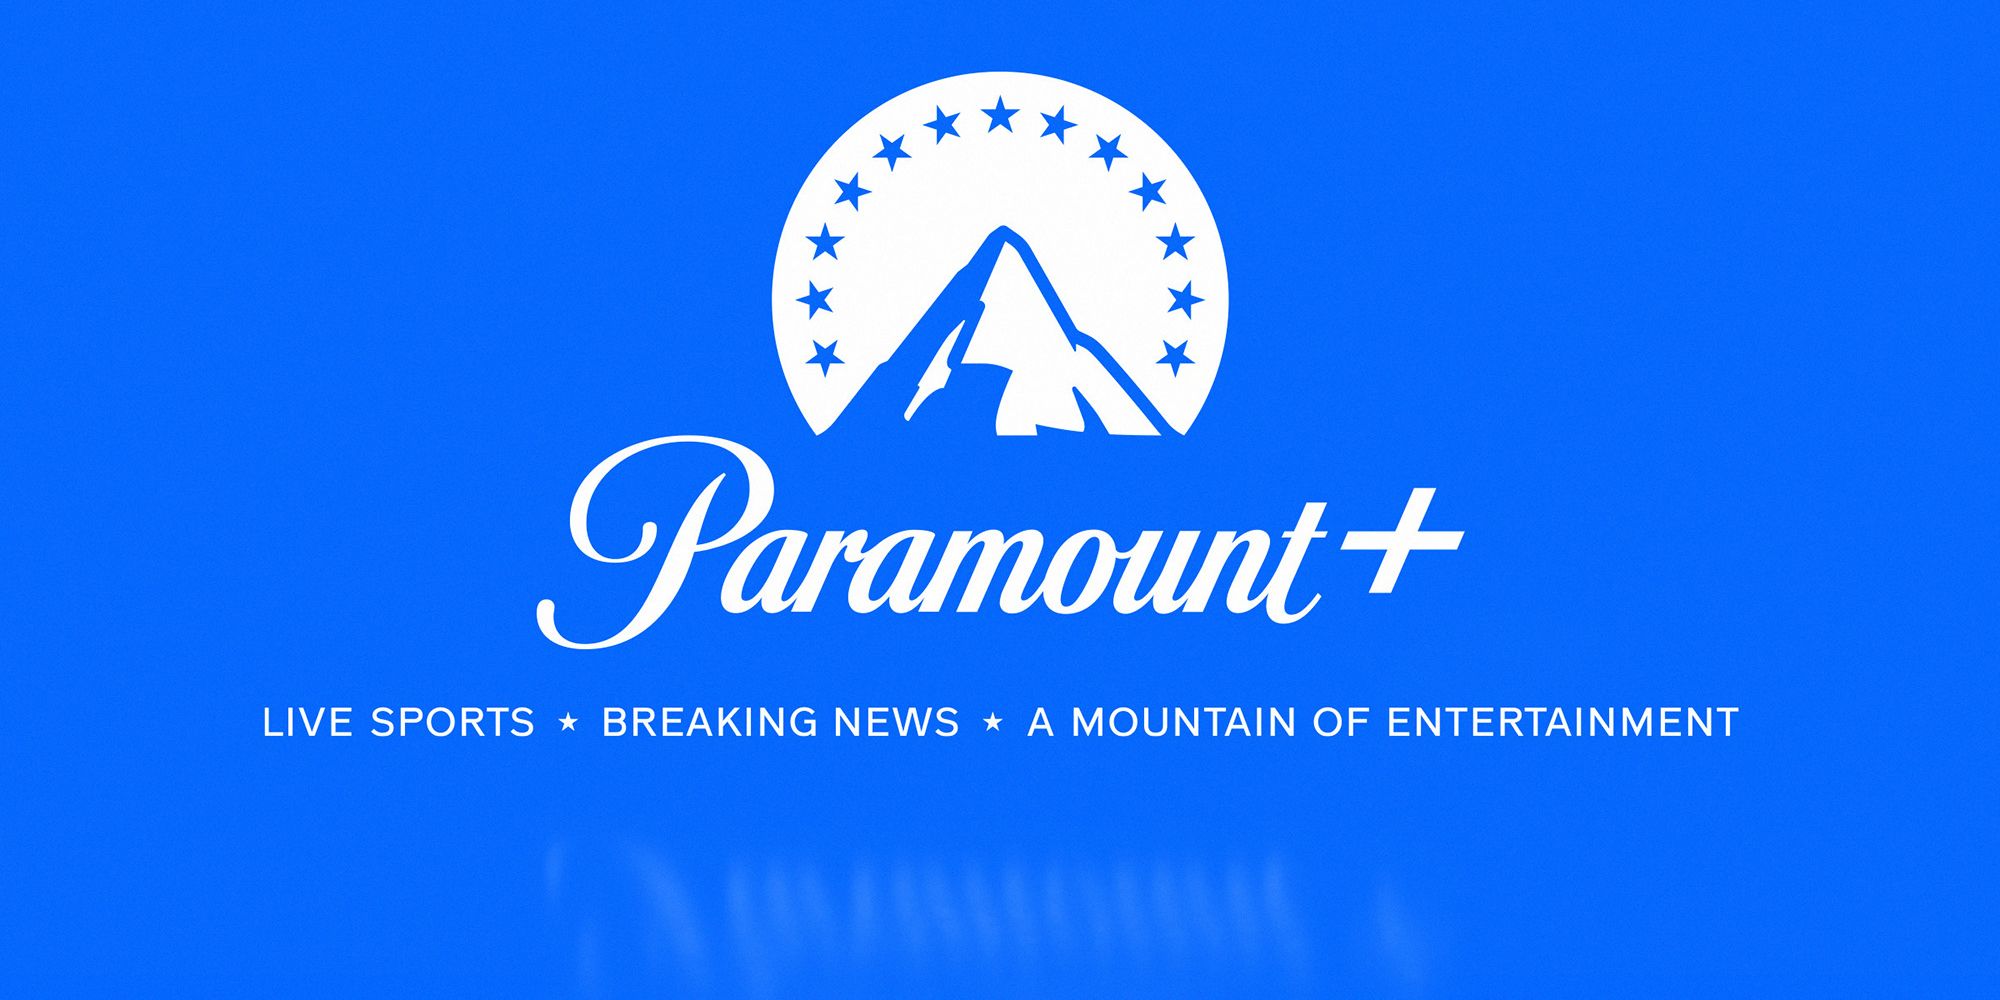 The Paramount Plus logo